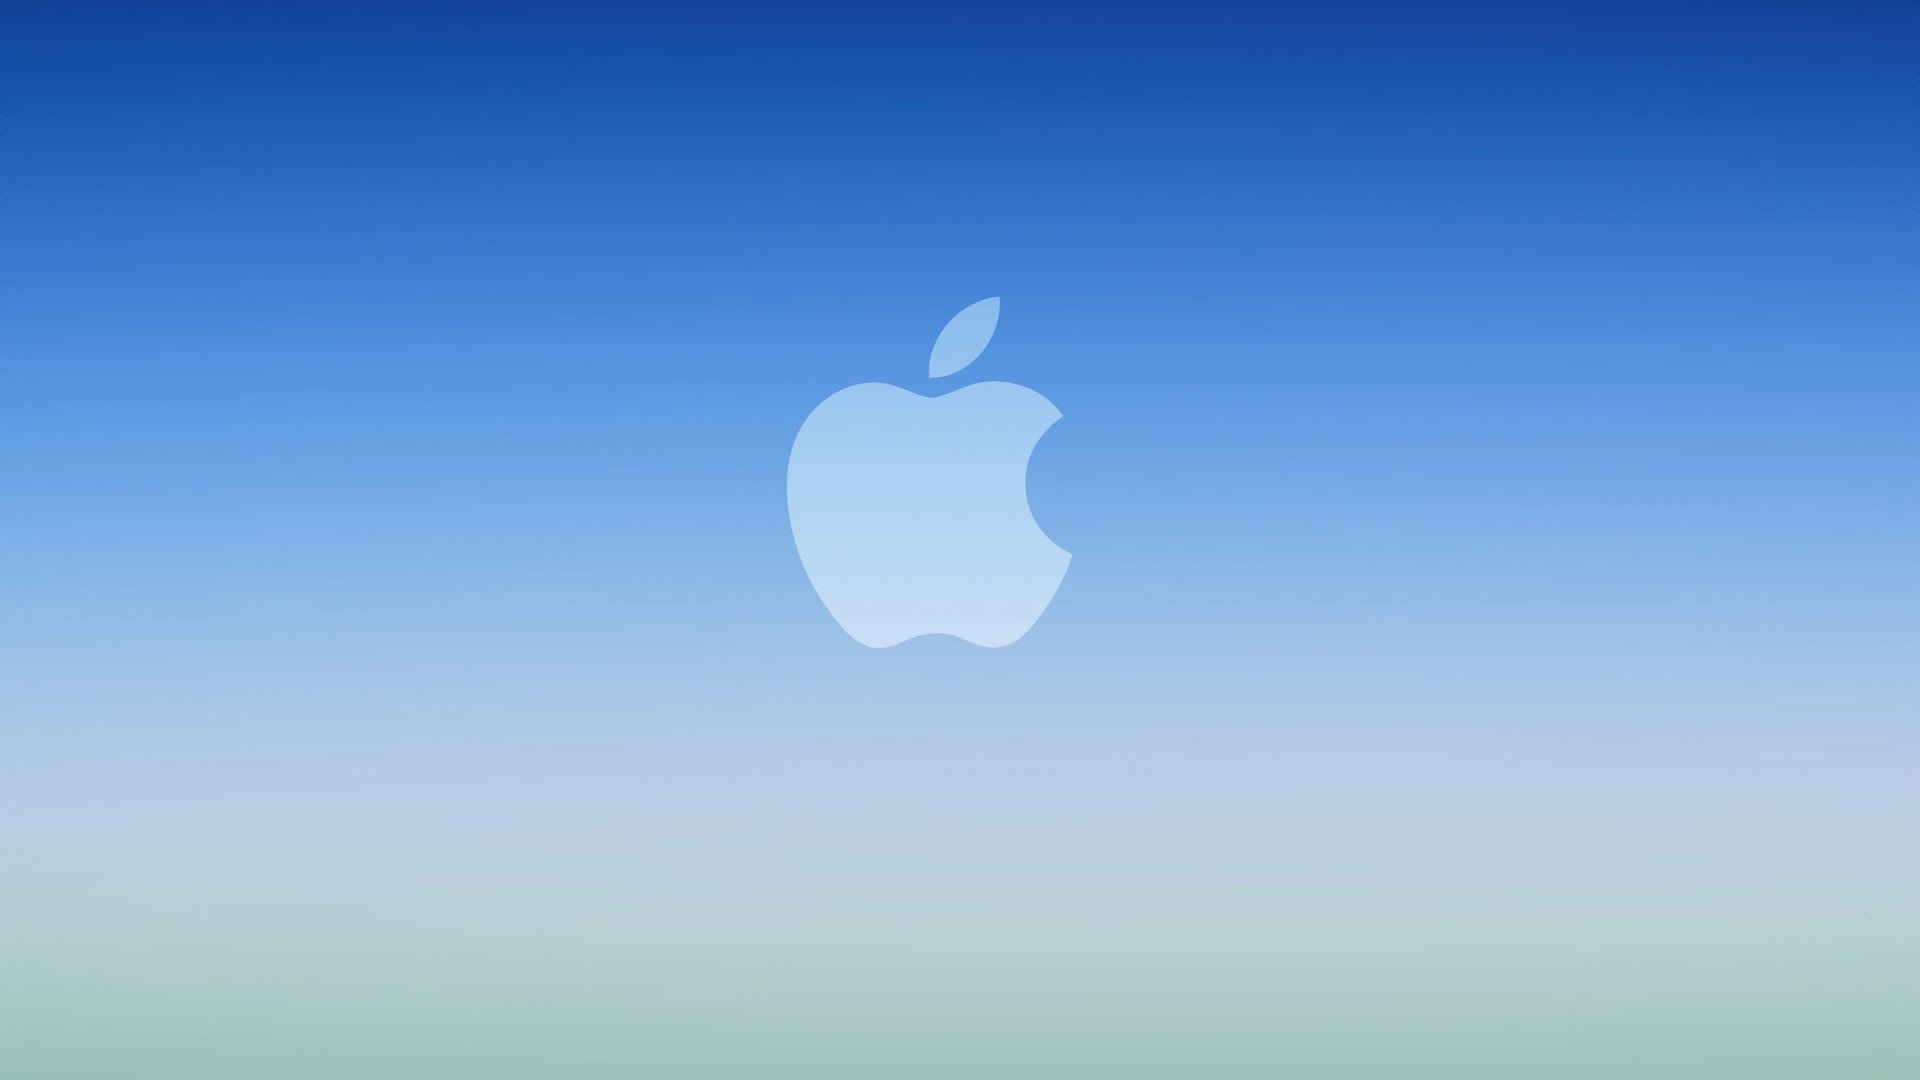 Обои айфон 2. Логотип Apple. Обои Apple. Обои на айфон. Обои Apple iphone.